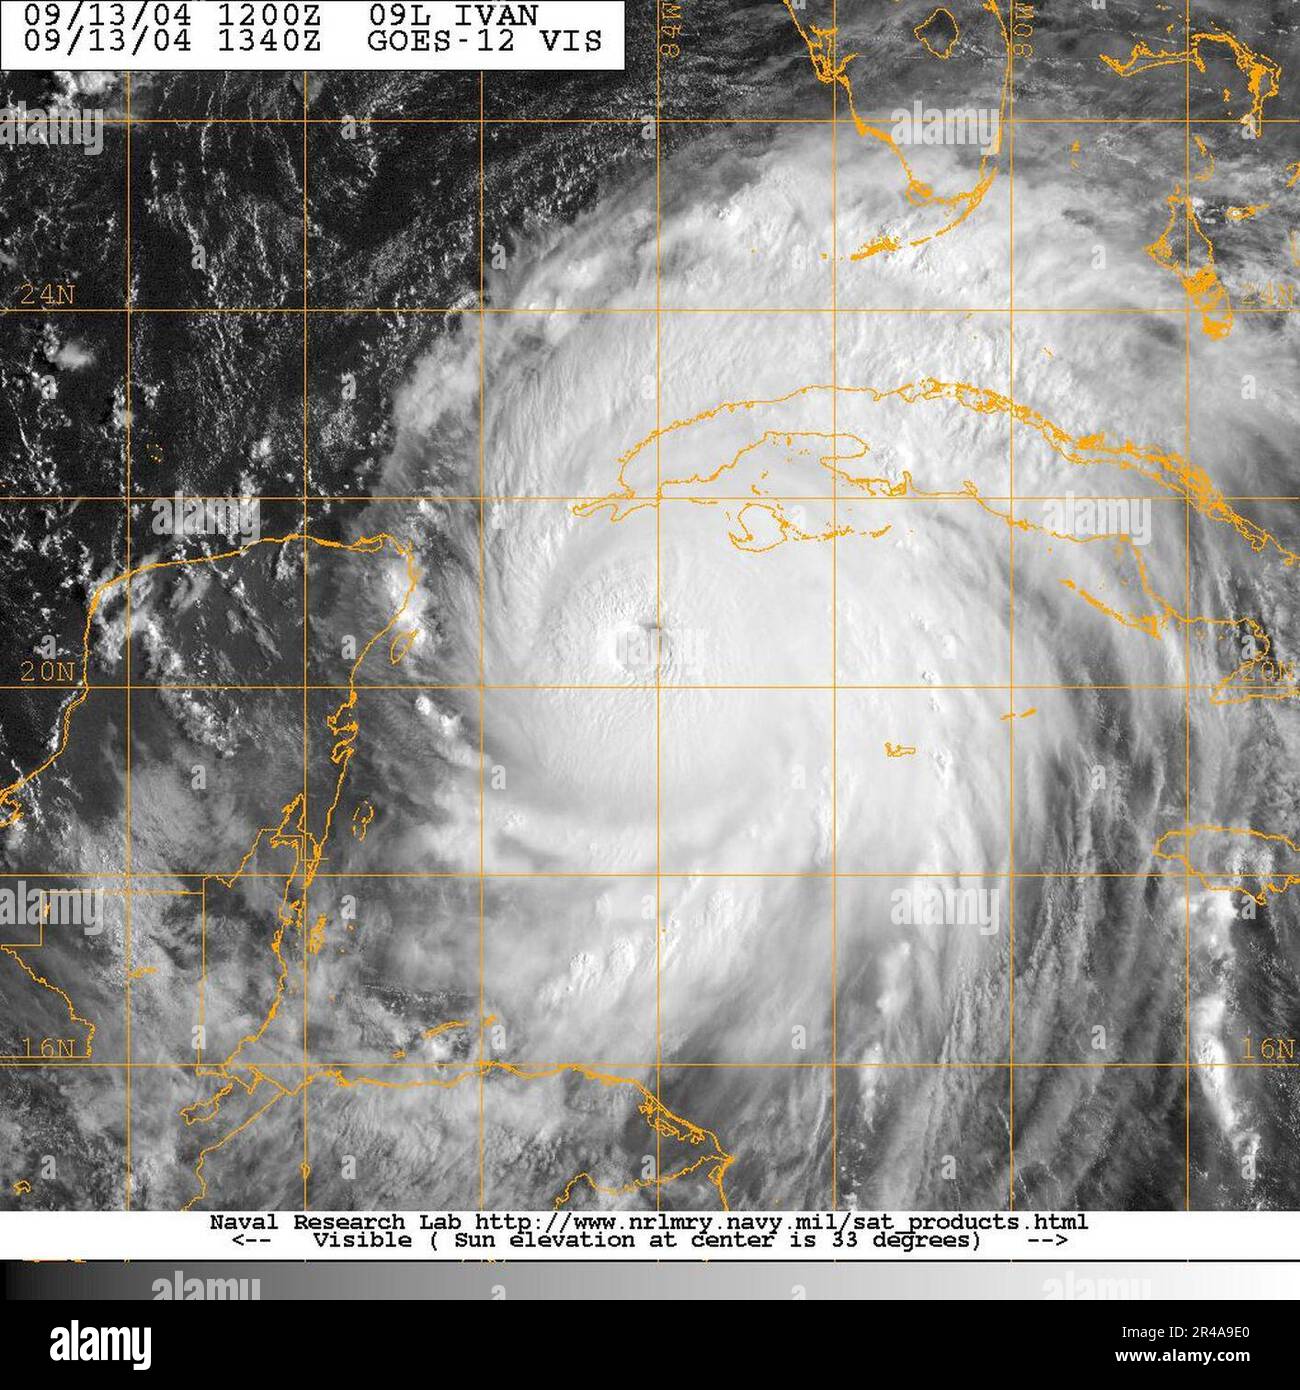 Imagen satelital de la Marina de LOS ESTADOS UNIDOS tomada del satélite GOES-12 del huracán Iván aproximadamente a las 0940 EST Foto de stock